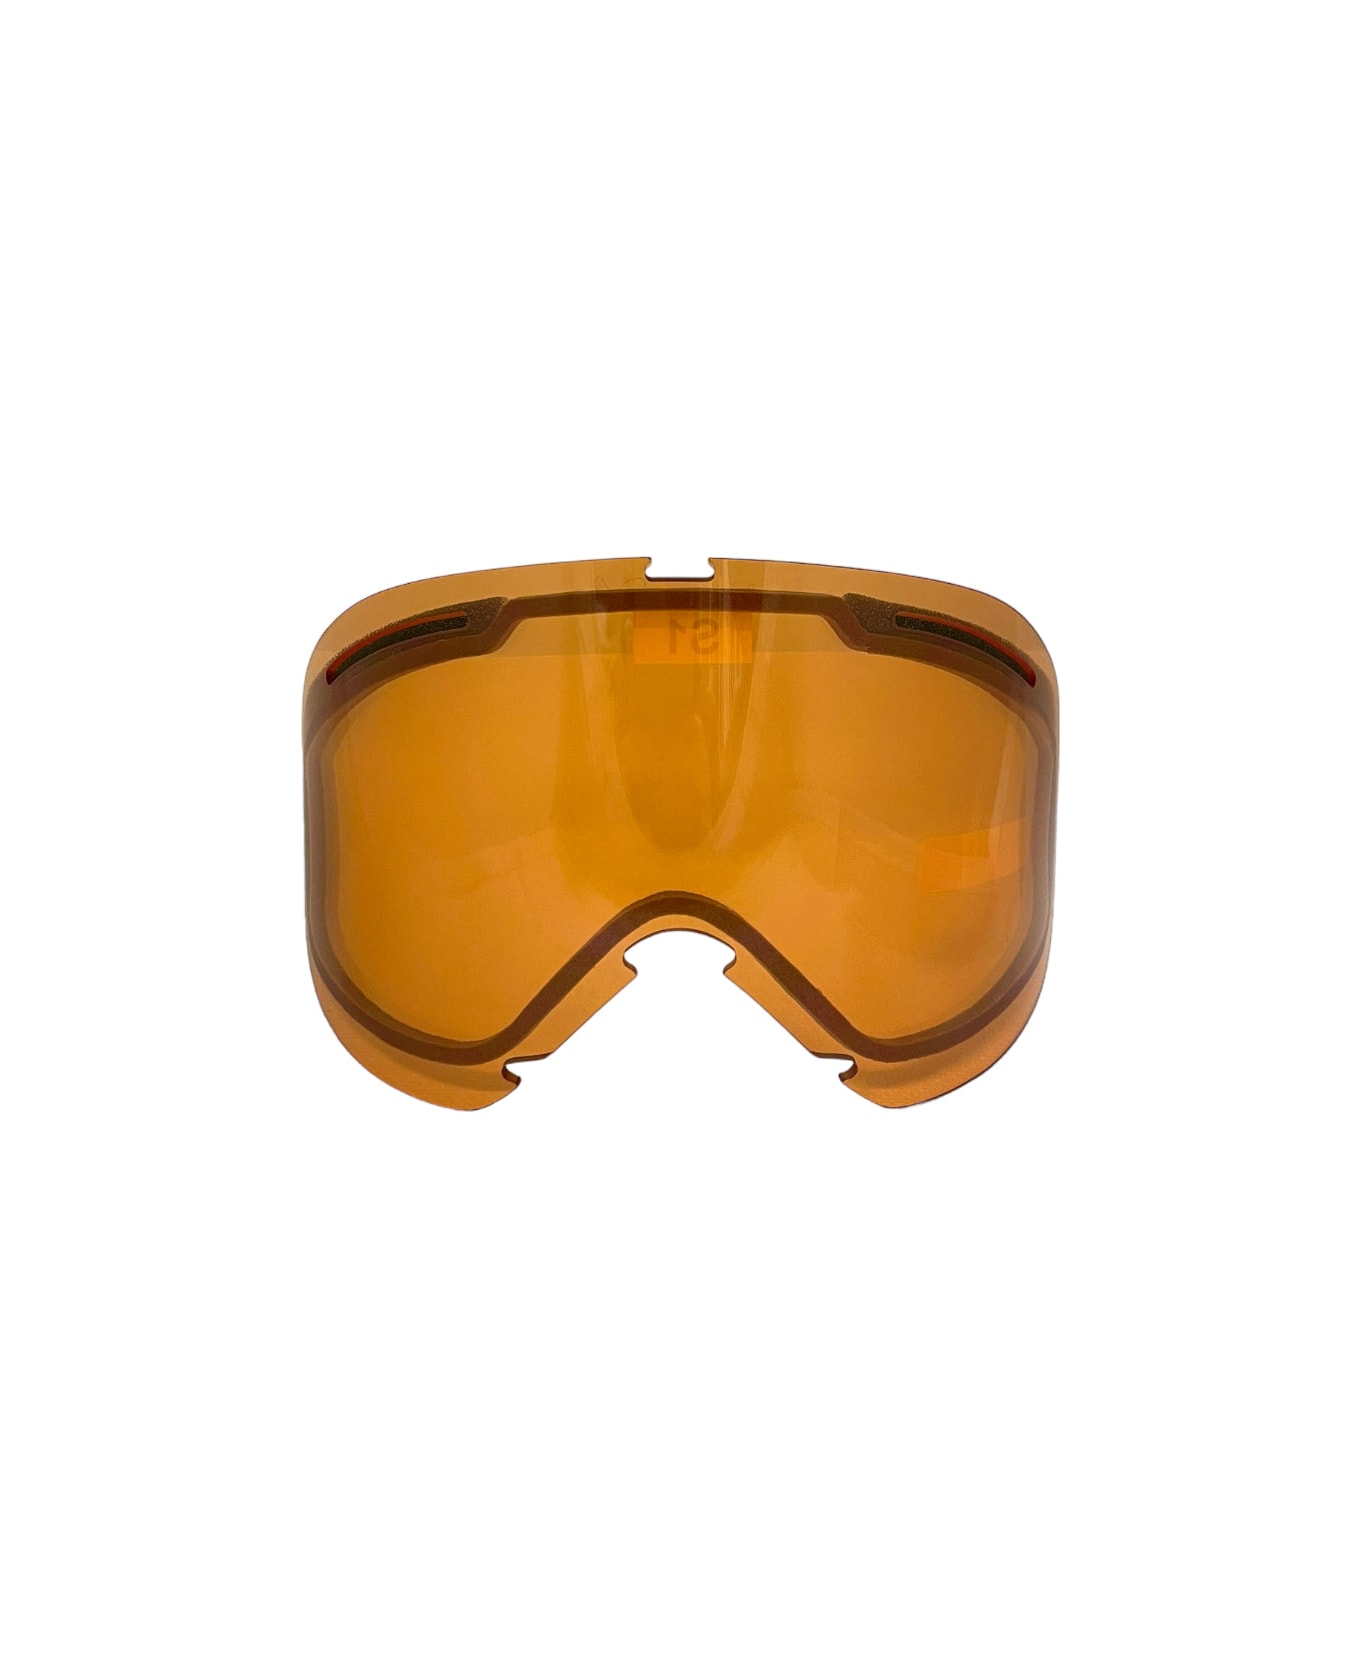 Oakley O Frame Snow - 7048 - Mask Lens Only Sunglasses